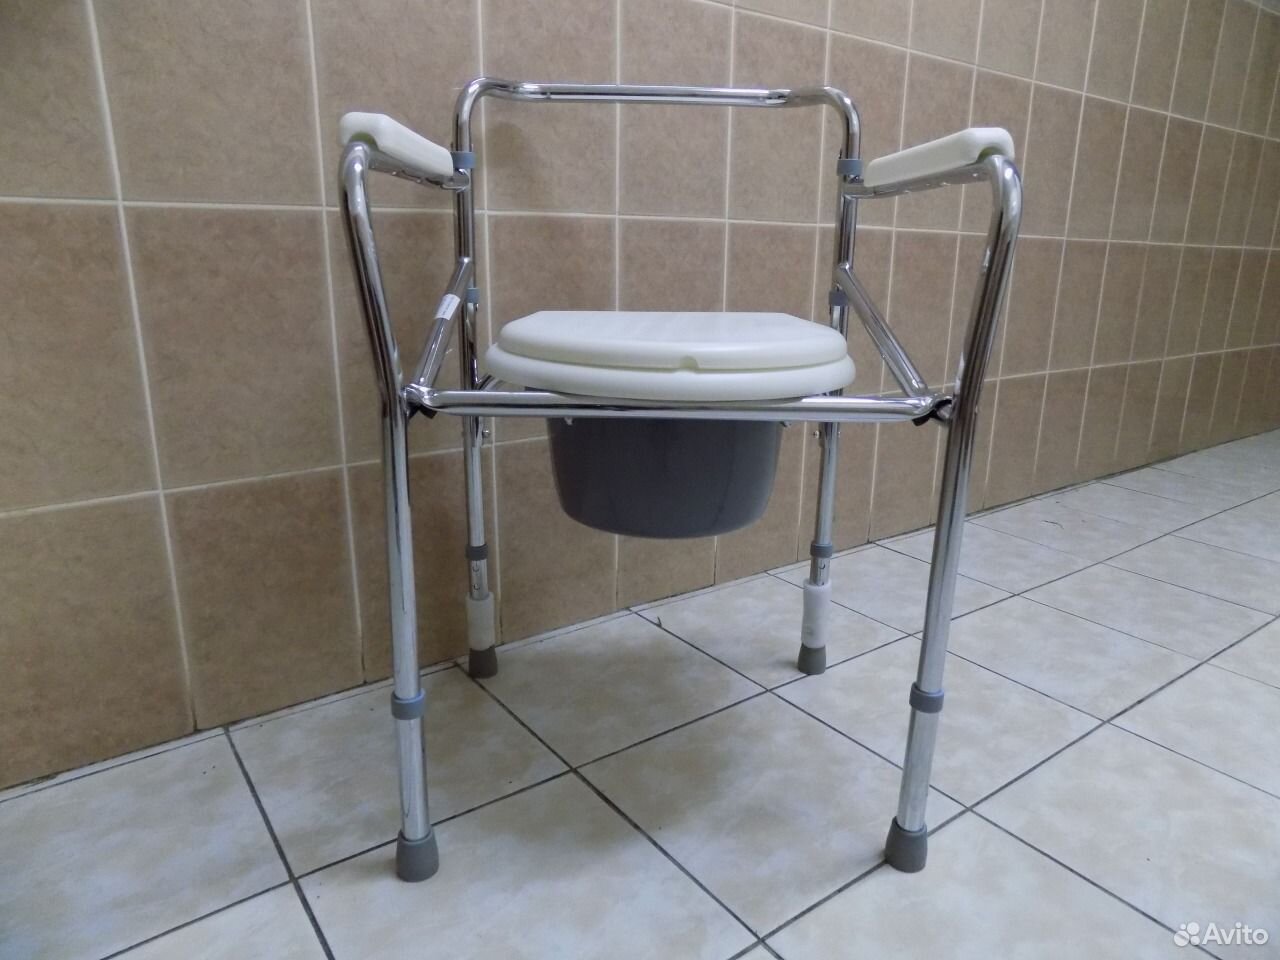 Авито стул туалет. Кресло туалет Амрус 6809. Кресло-туалет Amrus amcb6807. Санитарное кресло-туалет Care RPM 68500. Кресло-туалет складное Nova TN-402 (Р).